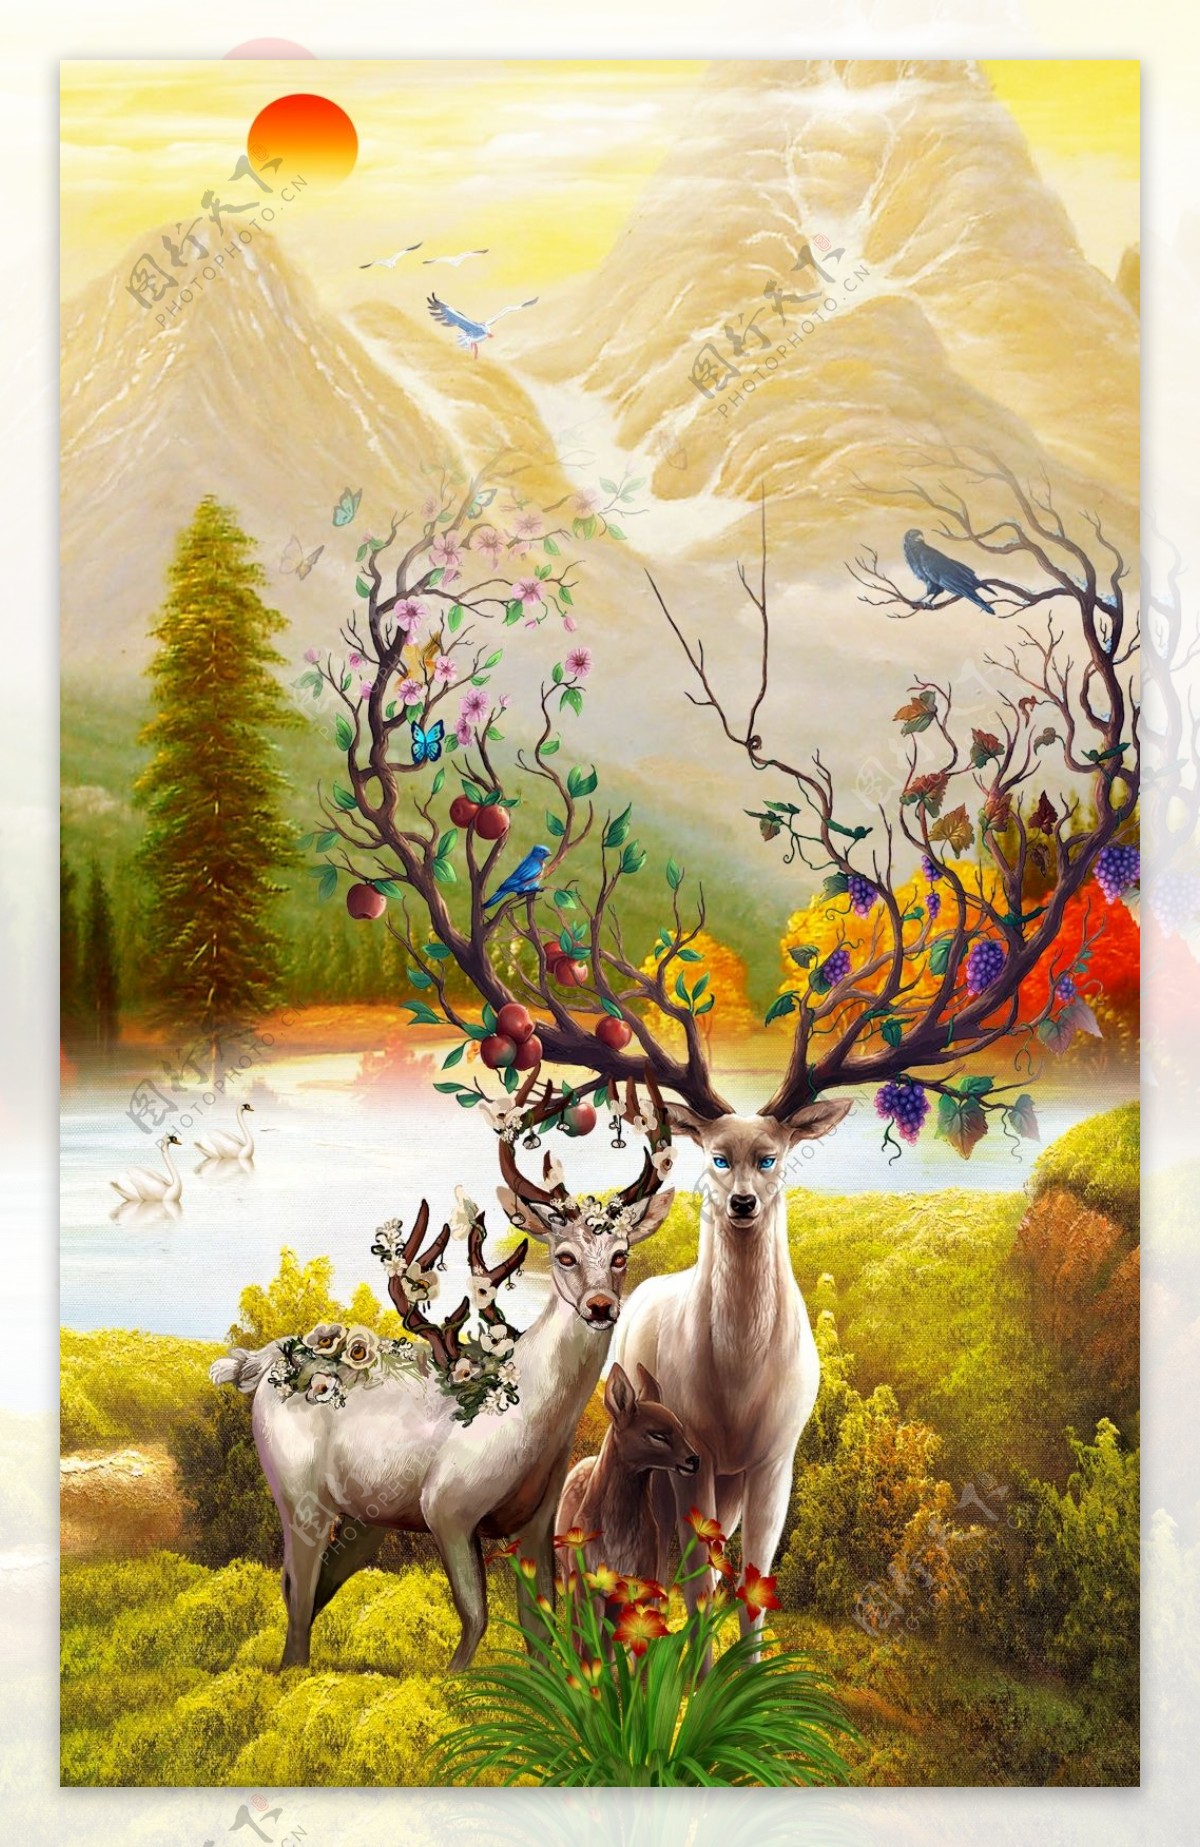 彩绘彩色驯鹿山水画装饰画